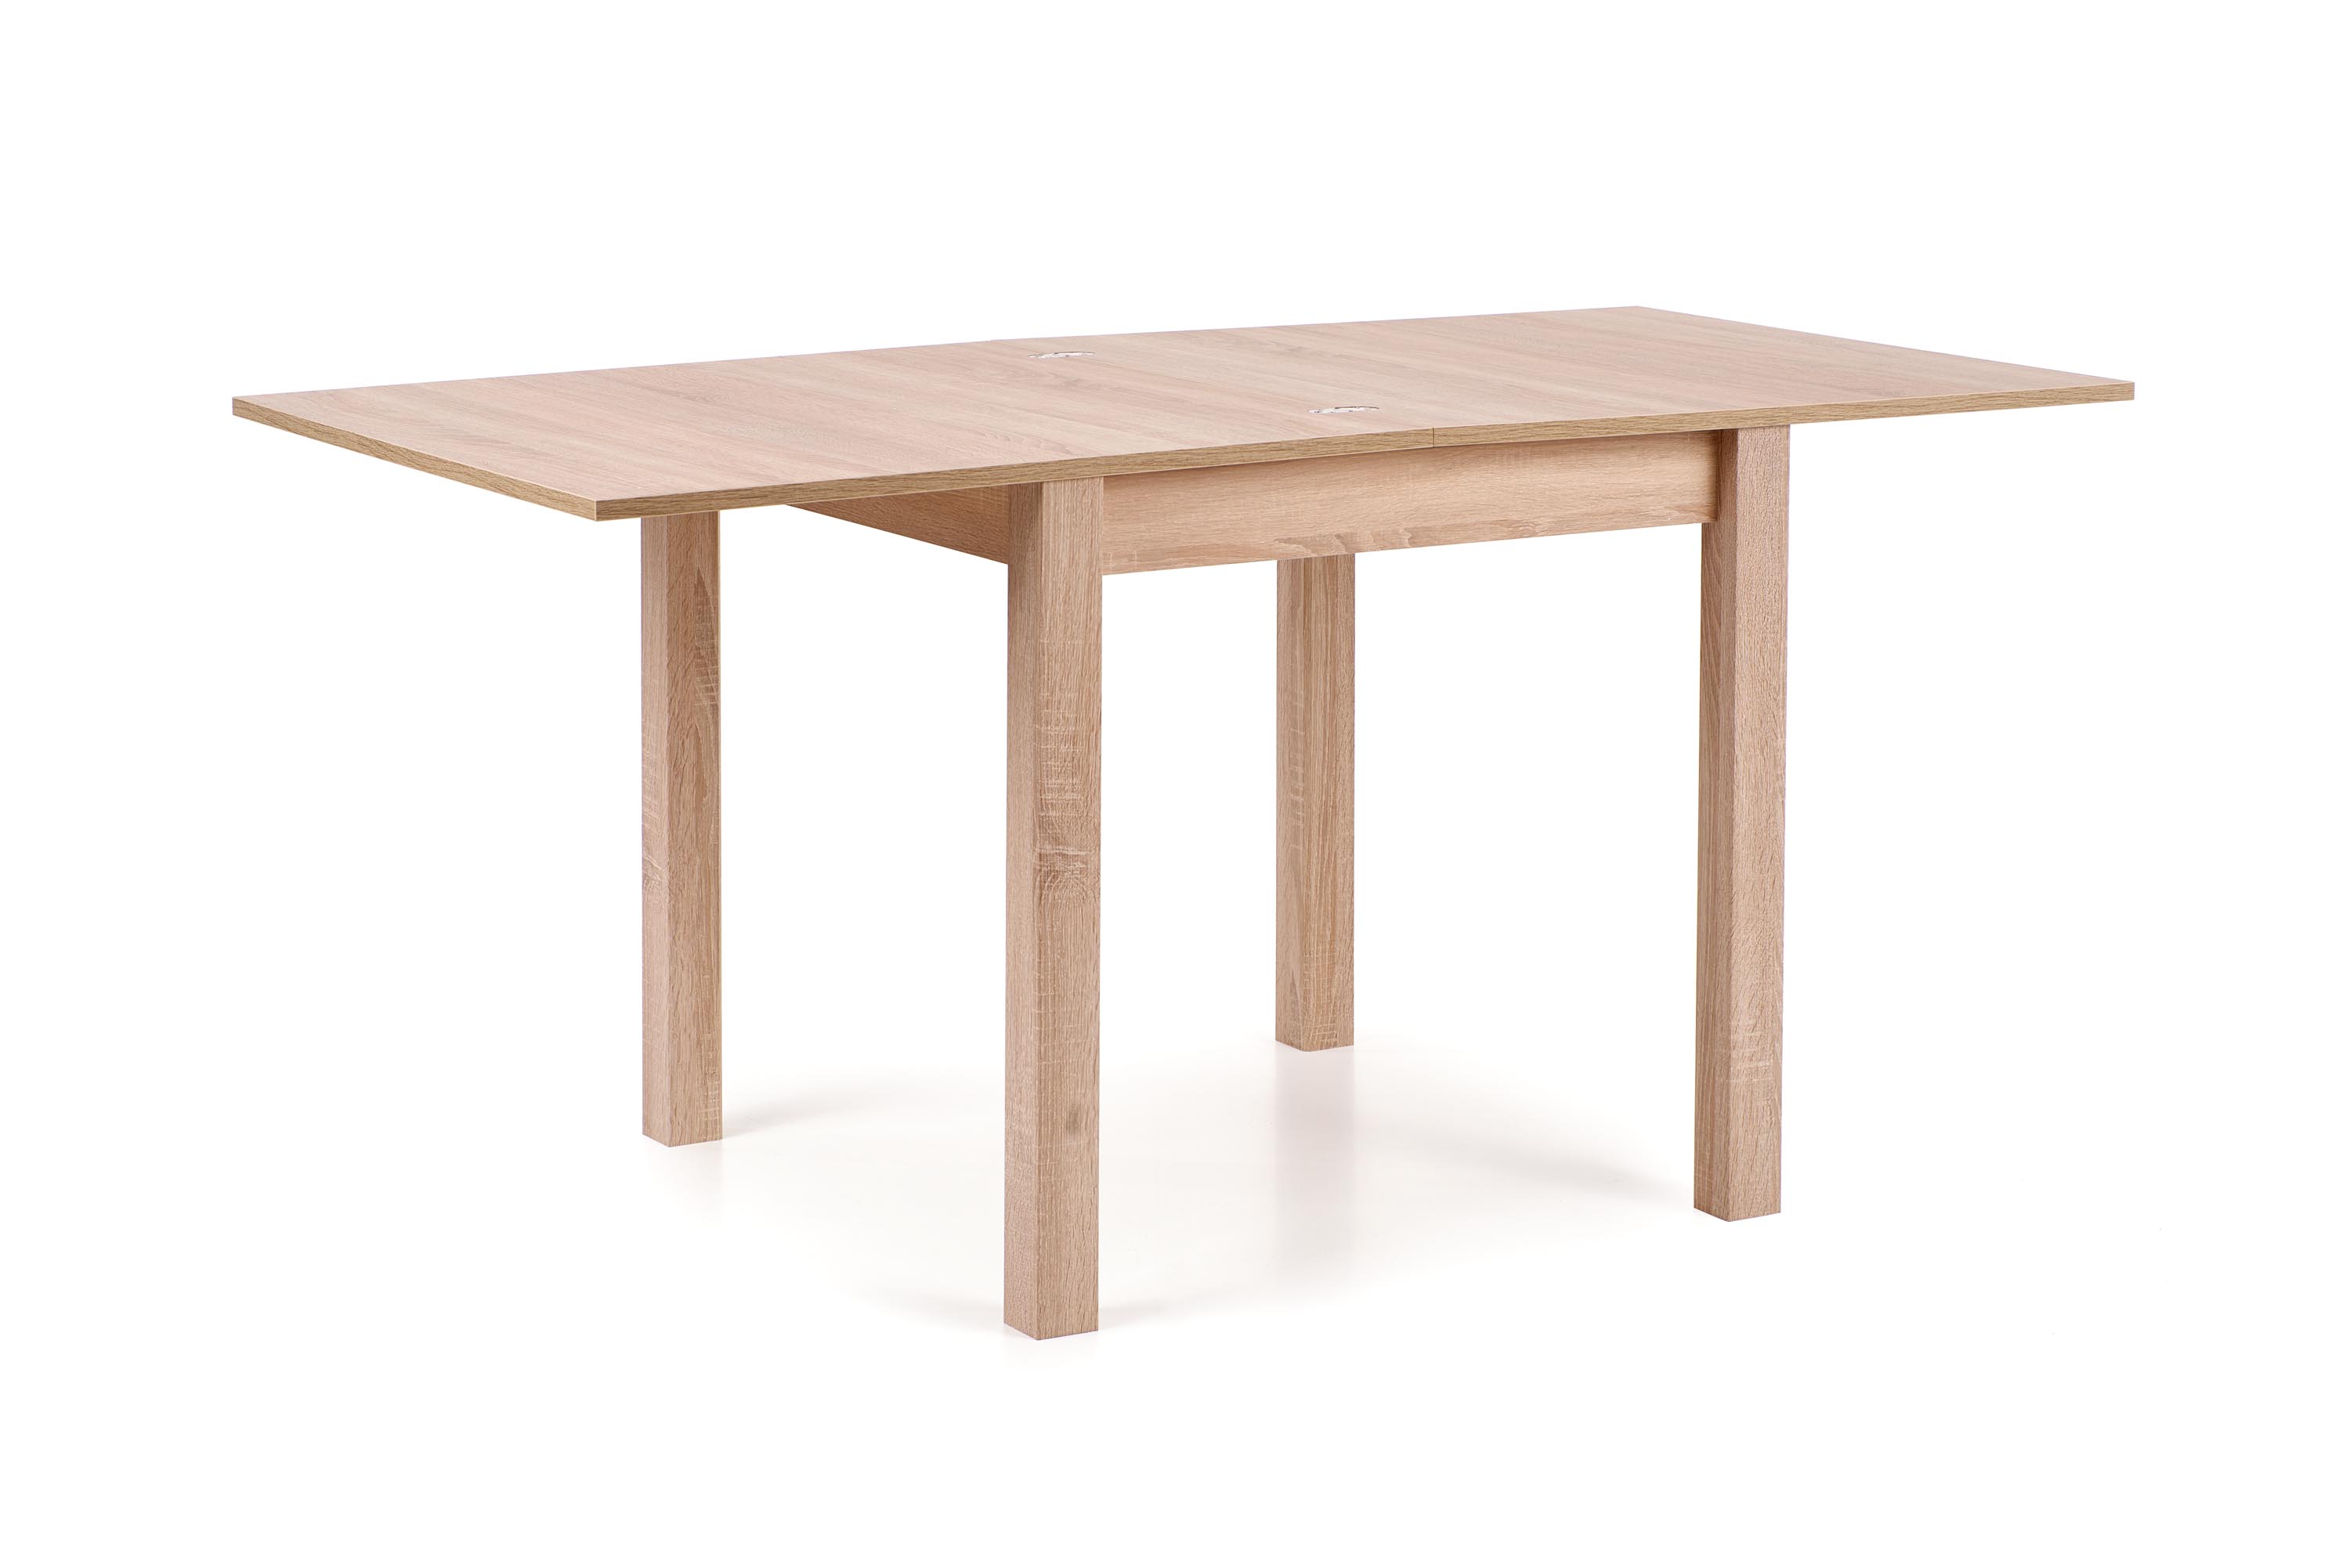 Stół Gracjan dąb sonoma prosta forma stołu 